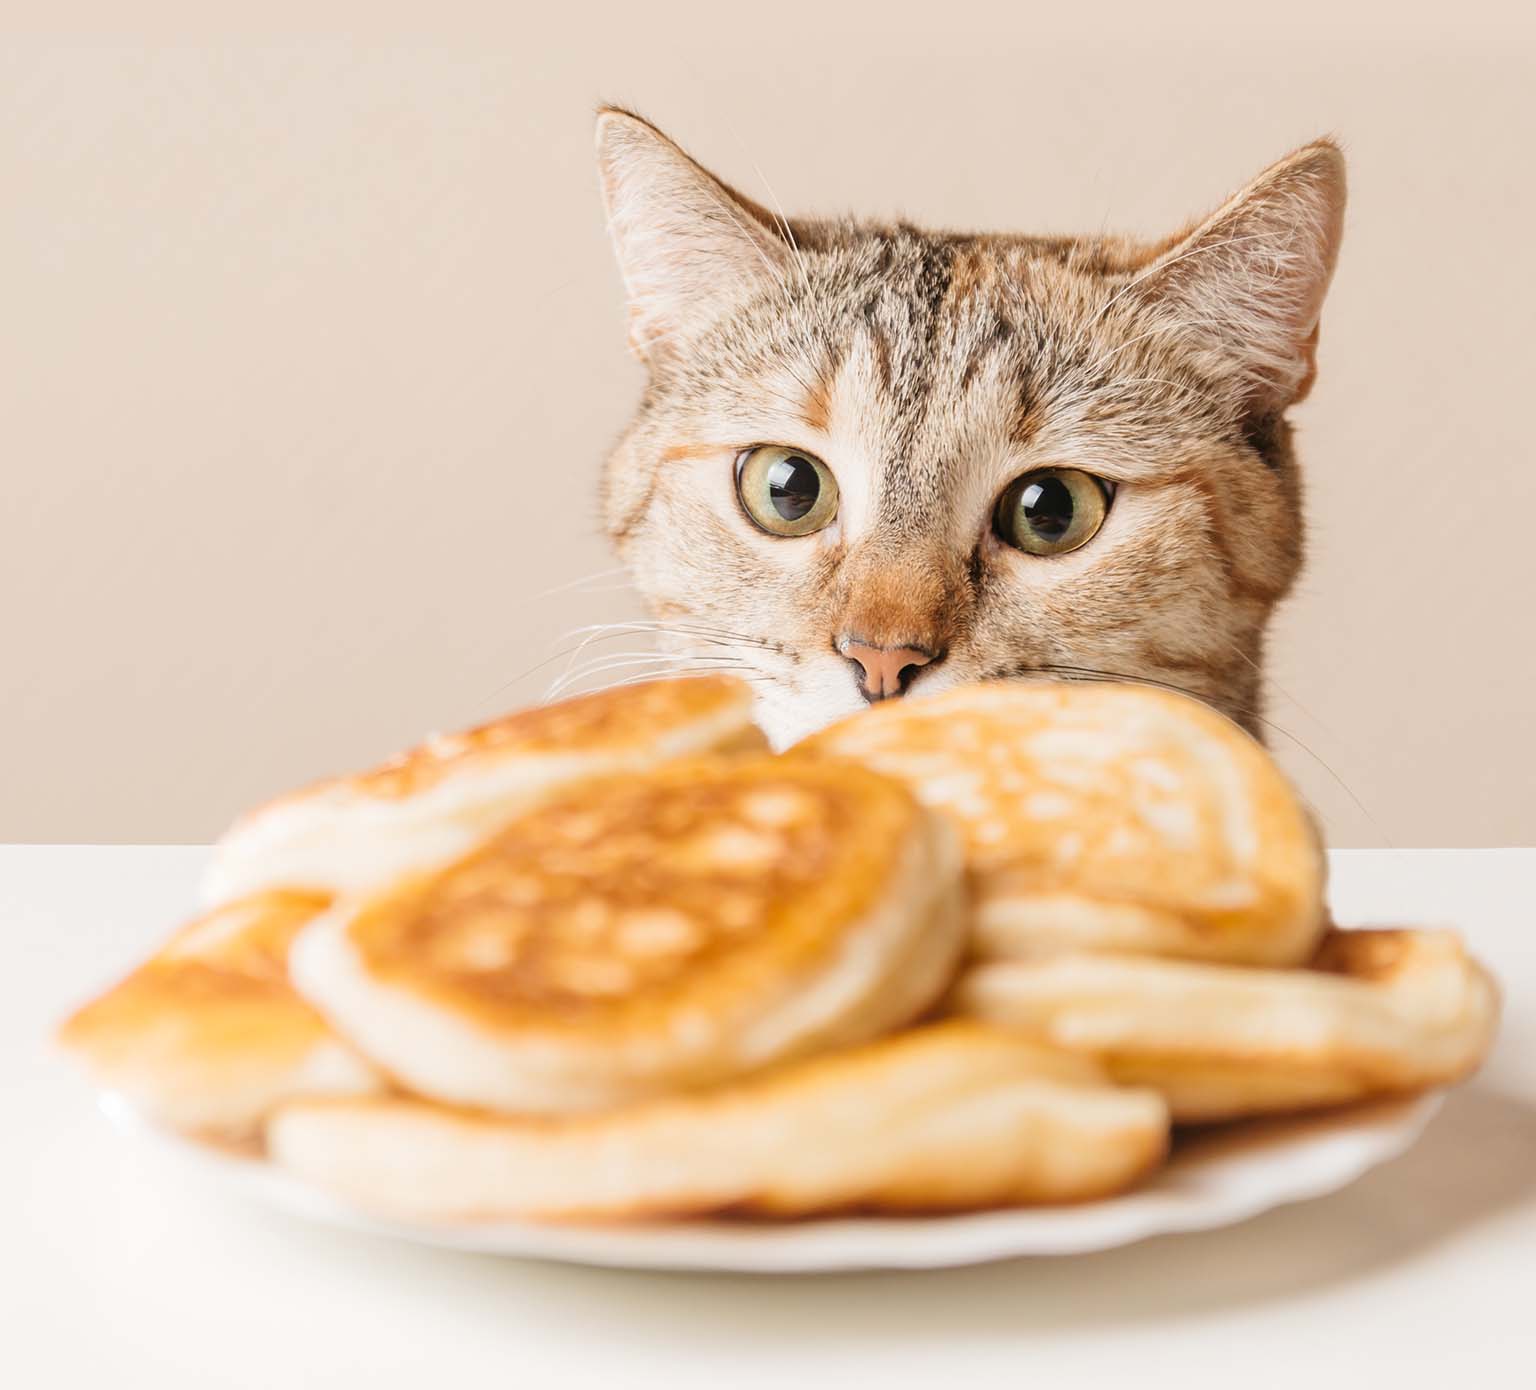 10 aliments pour les humains qui sont dangereux pour les chats